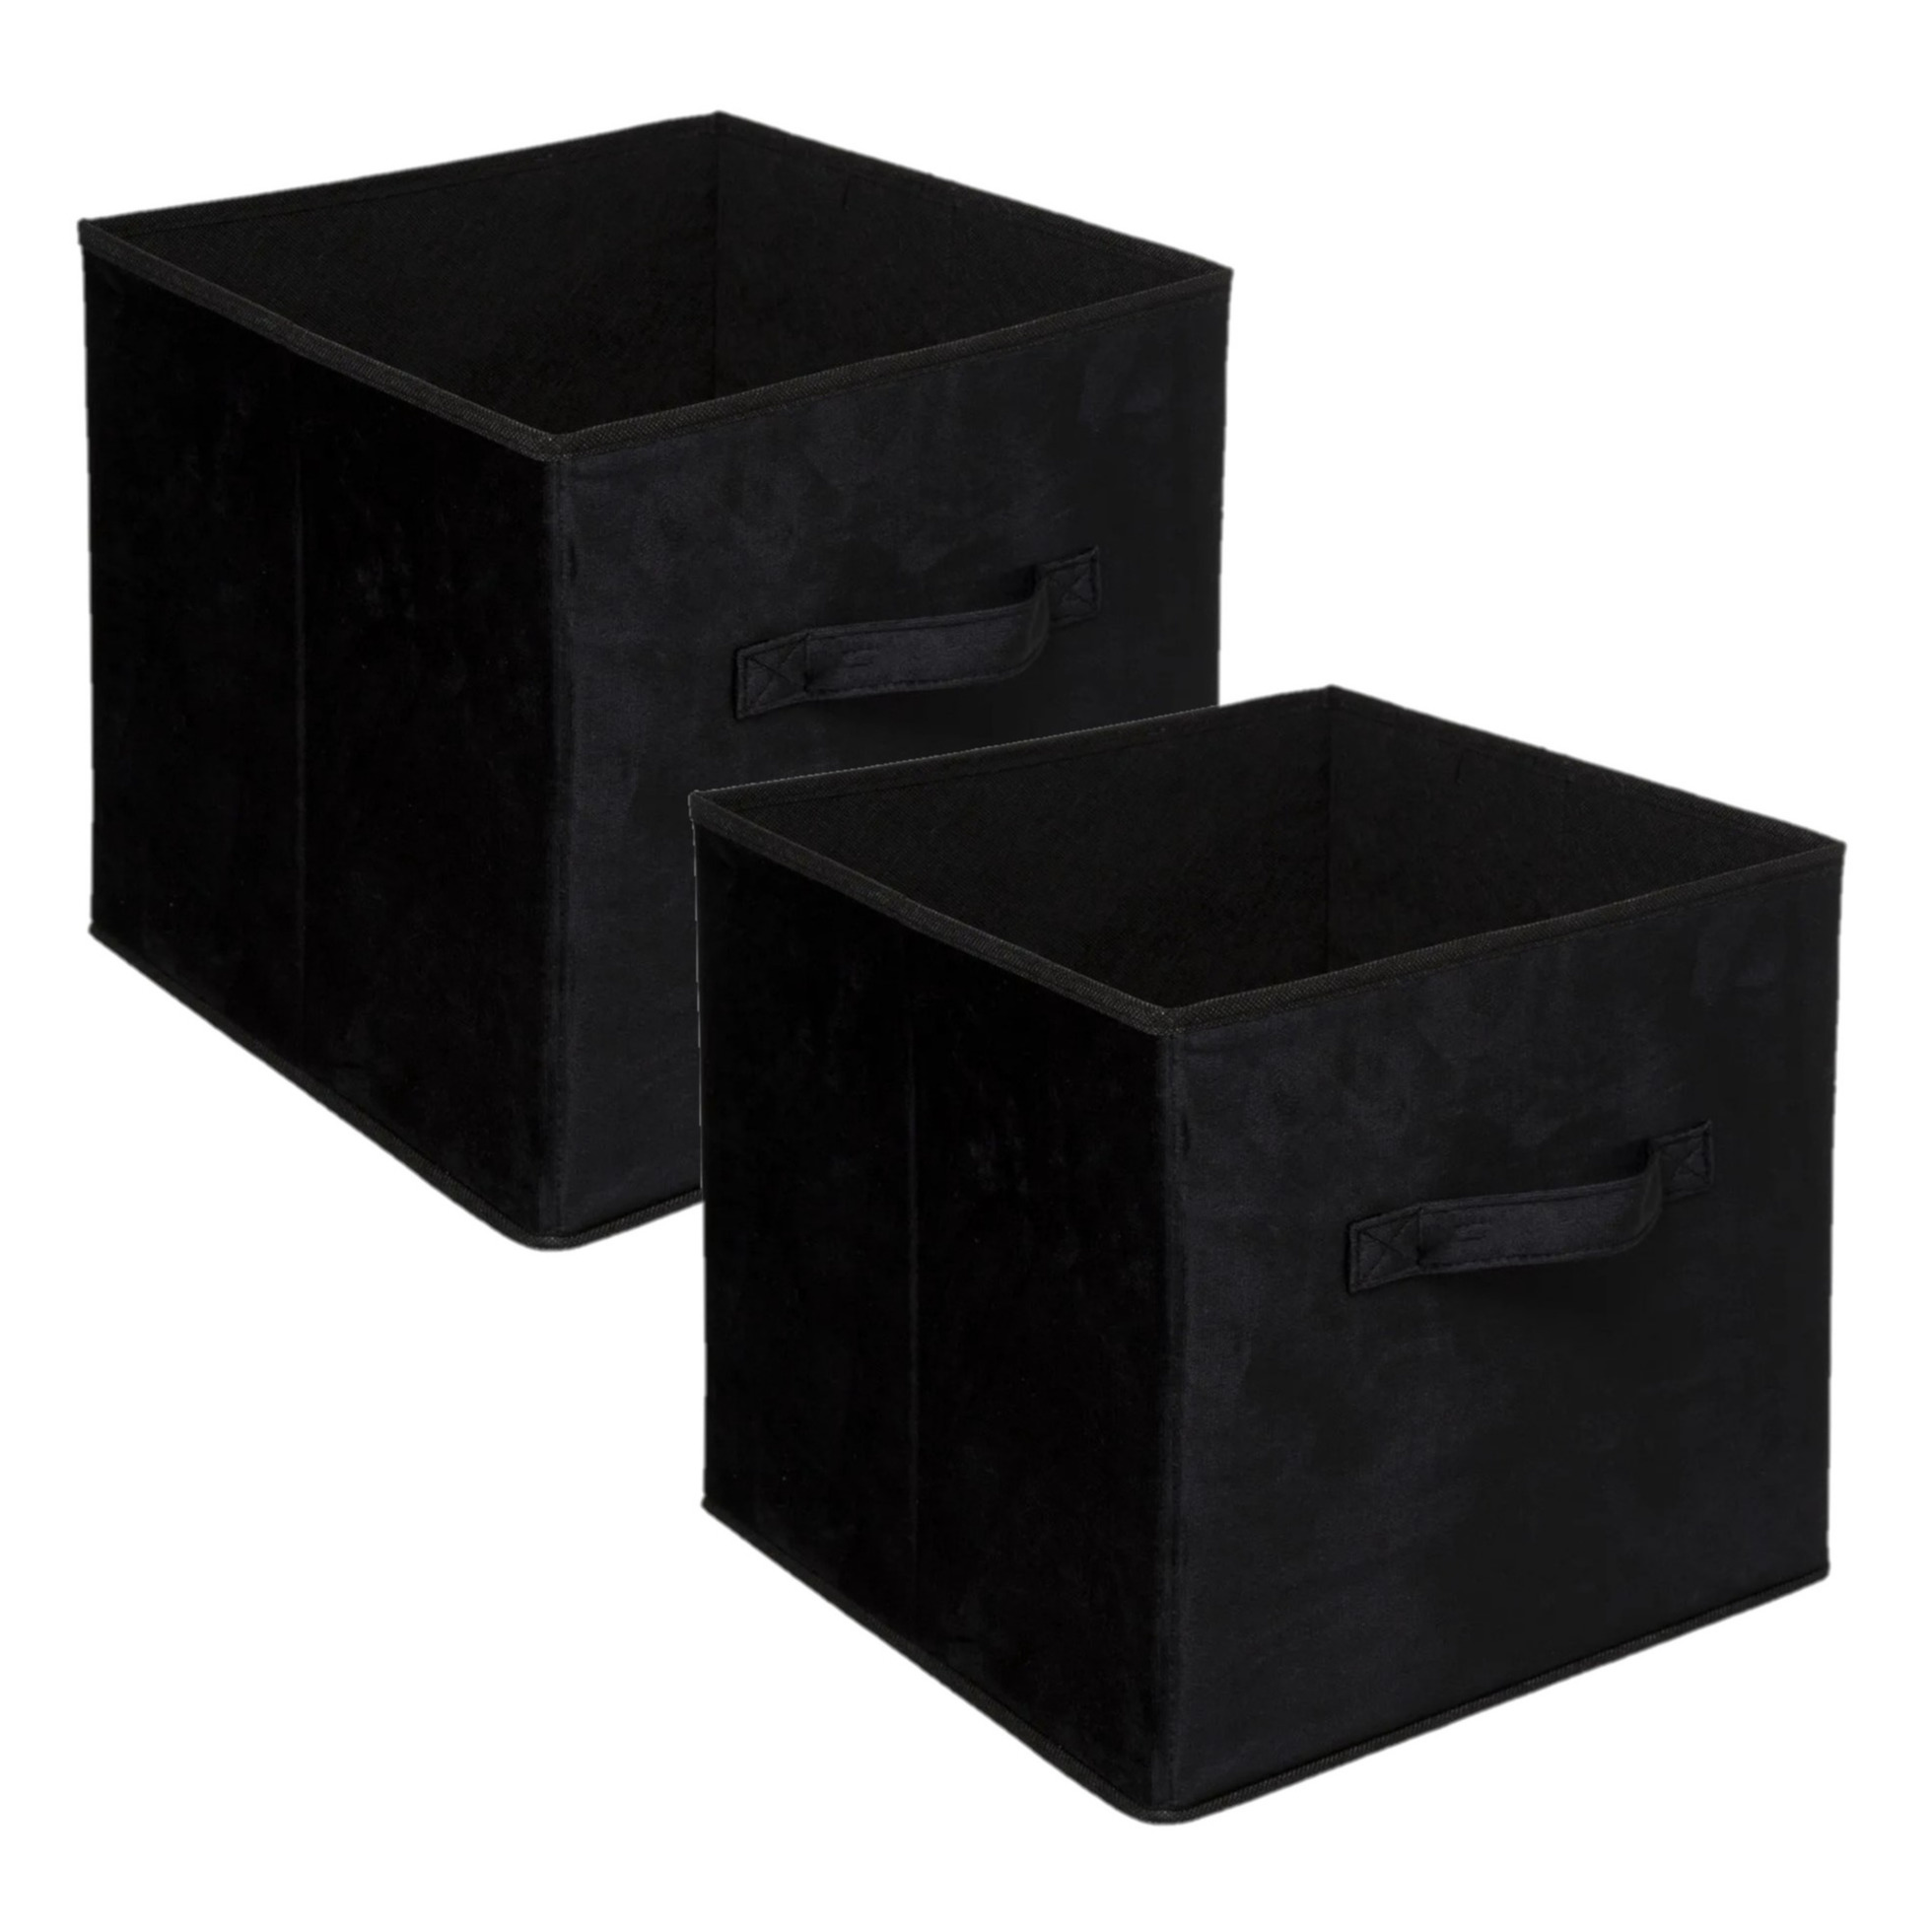 Set van 2x stuks opbergmand-kastmand 29 liter zwart polyester 31 x 31 x 31 cm